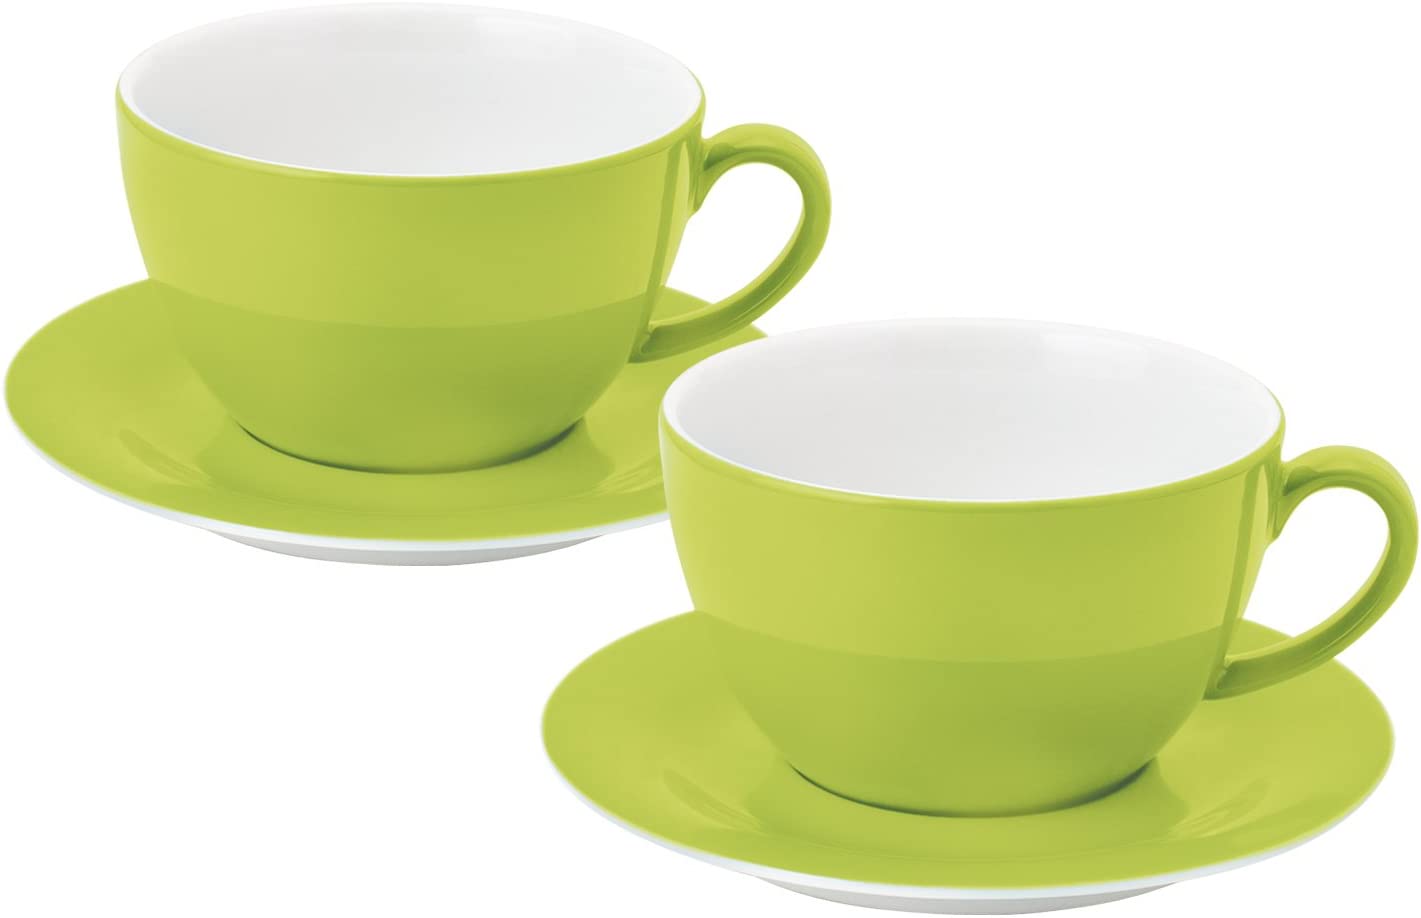 KAHLA Pronto 57E147 A72605 °C Cups Set of 4 Lime Green